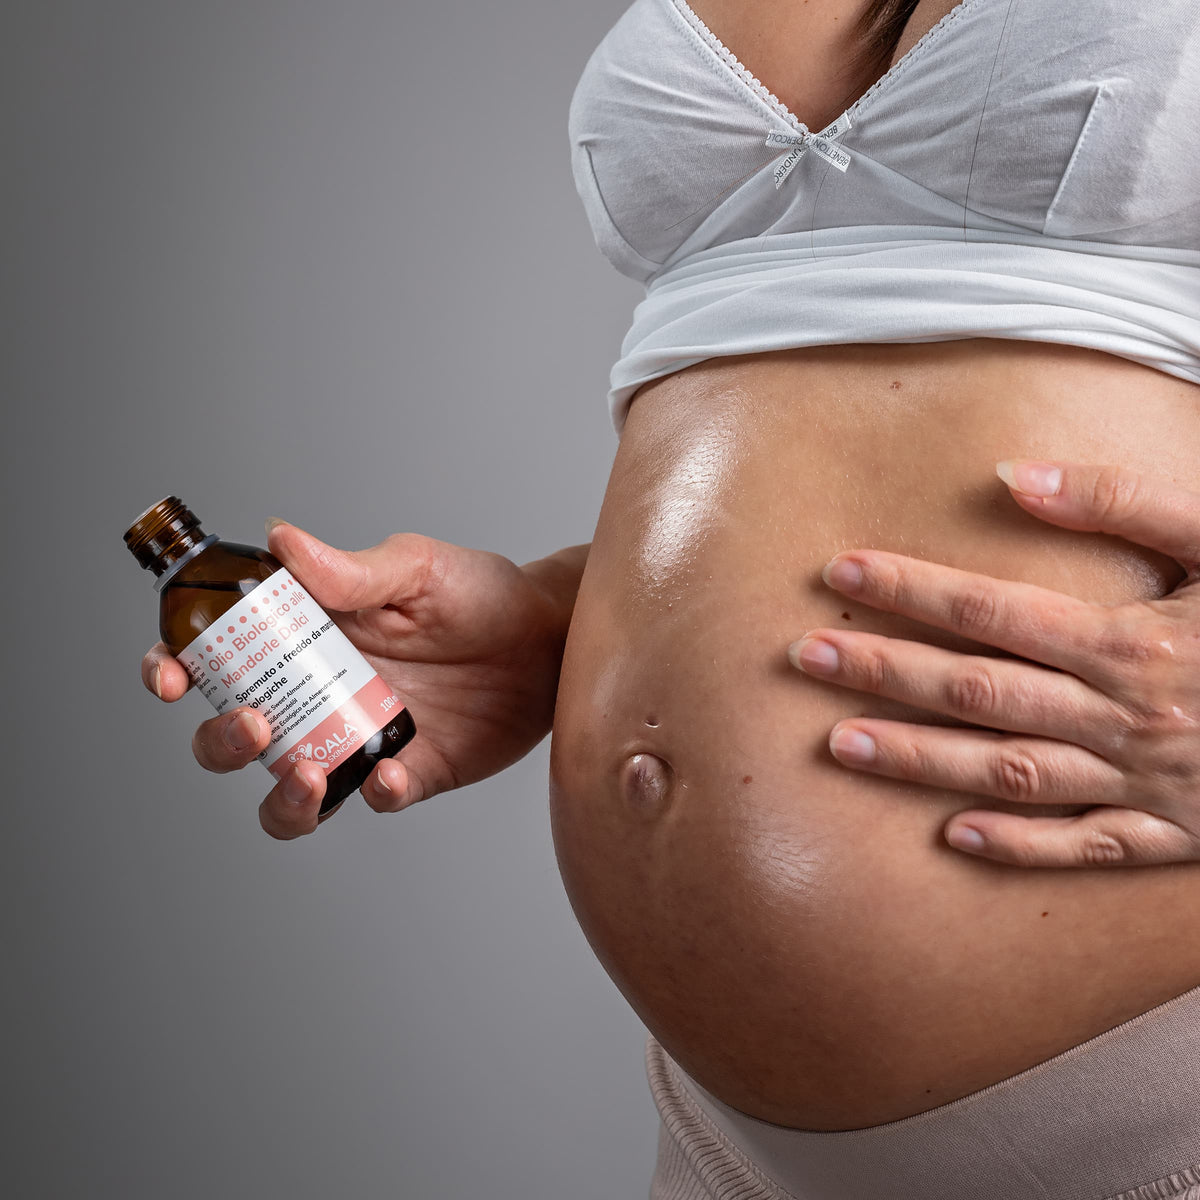  IVA NATURA Aceite orgánico puro de almendras para bebé 4.22 fl  oz : Bebés